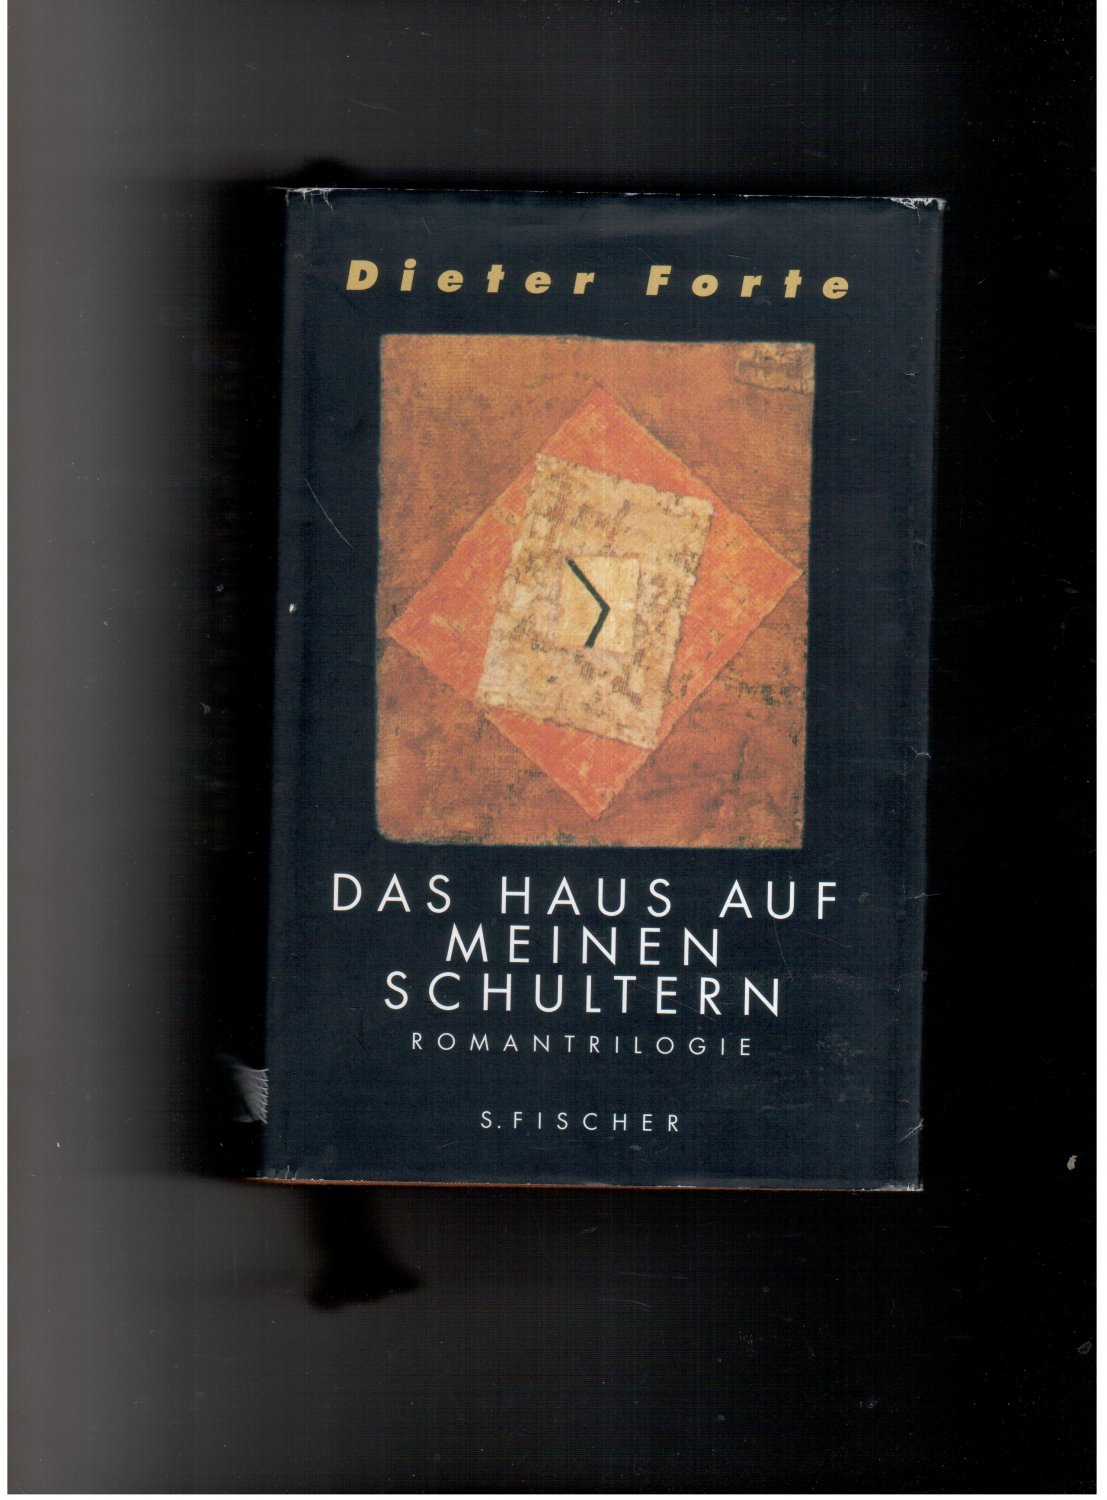 Das Haus auf meinen Schultern - Romantrilogie - Dieter Forte